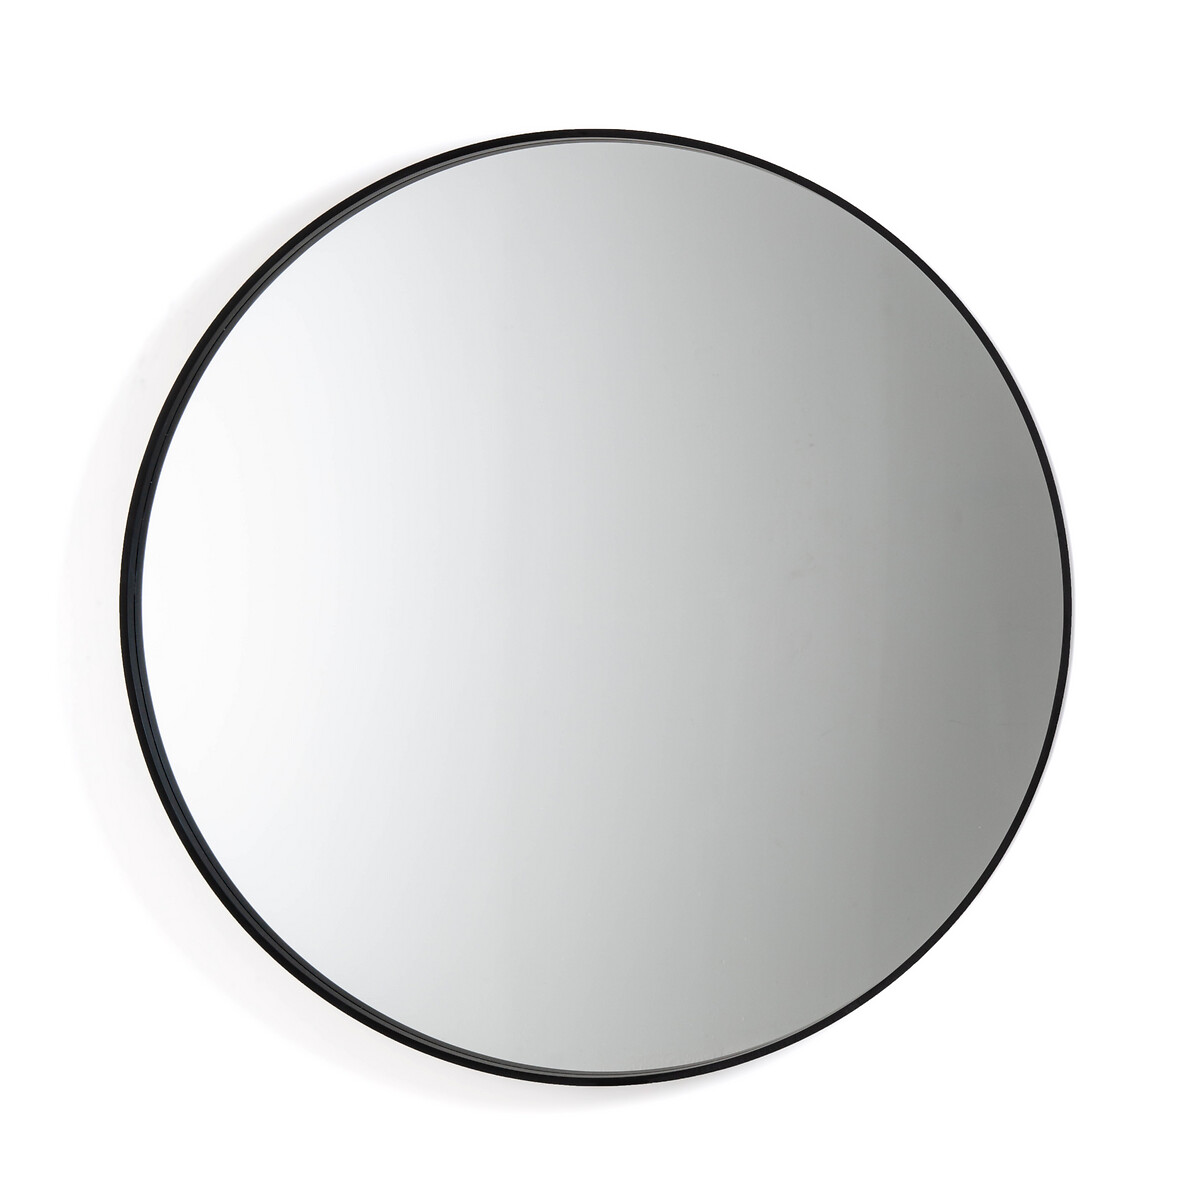 Alaria Round Mirror Diameter 120cm, Black Round Mirror 100cm